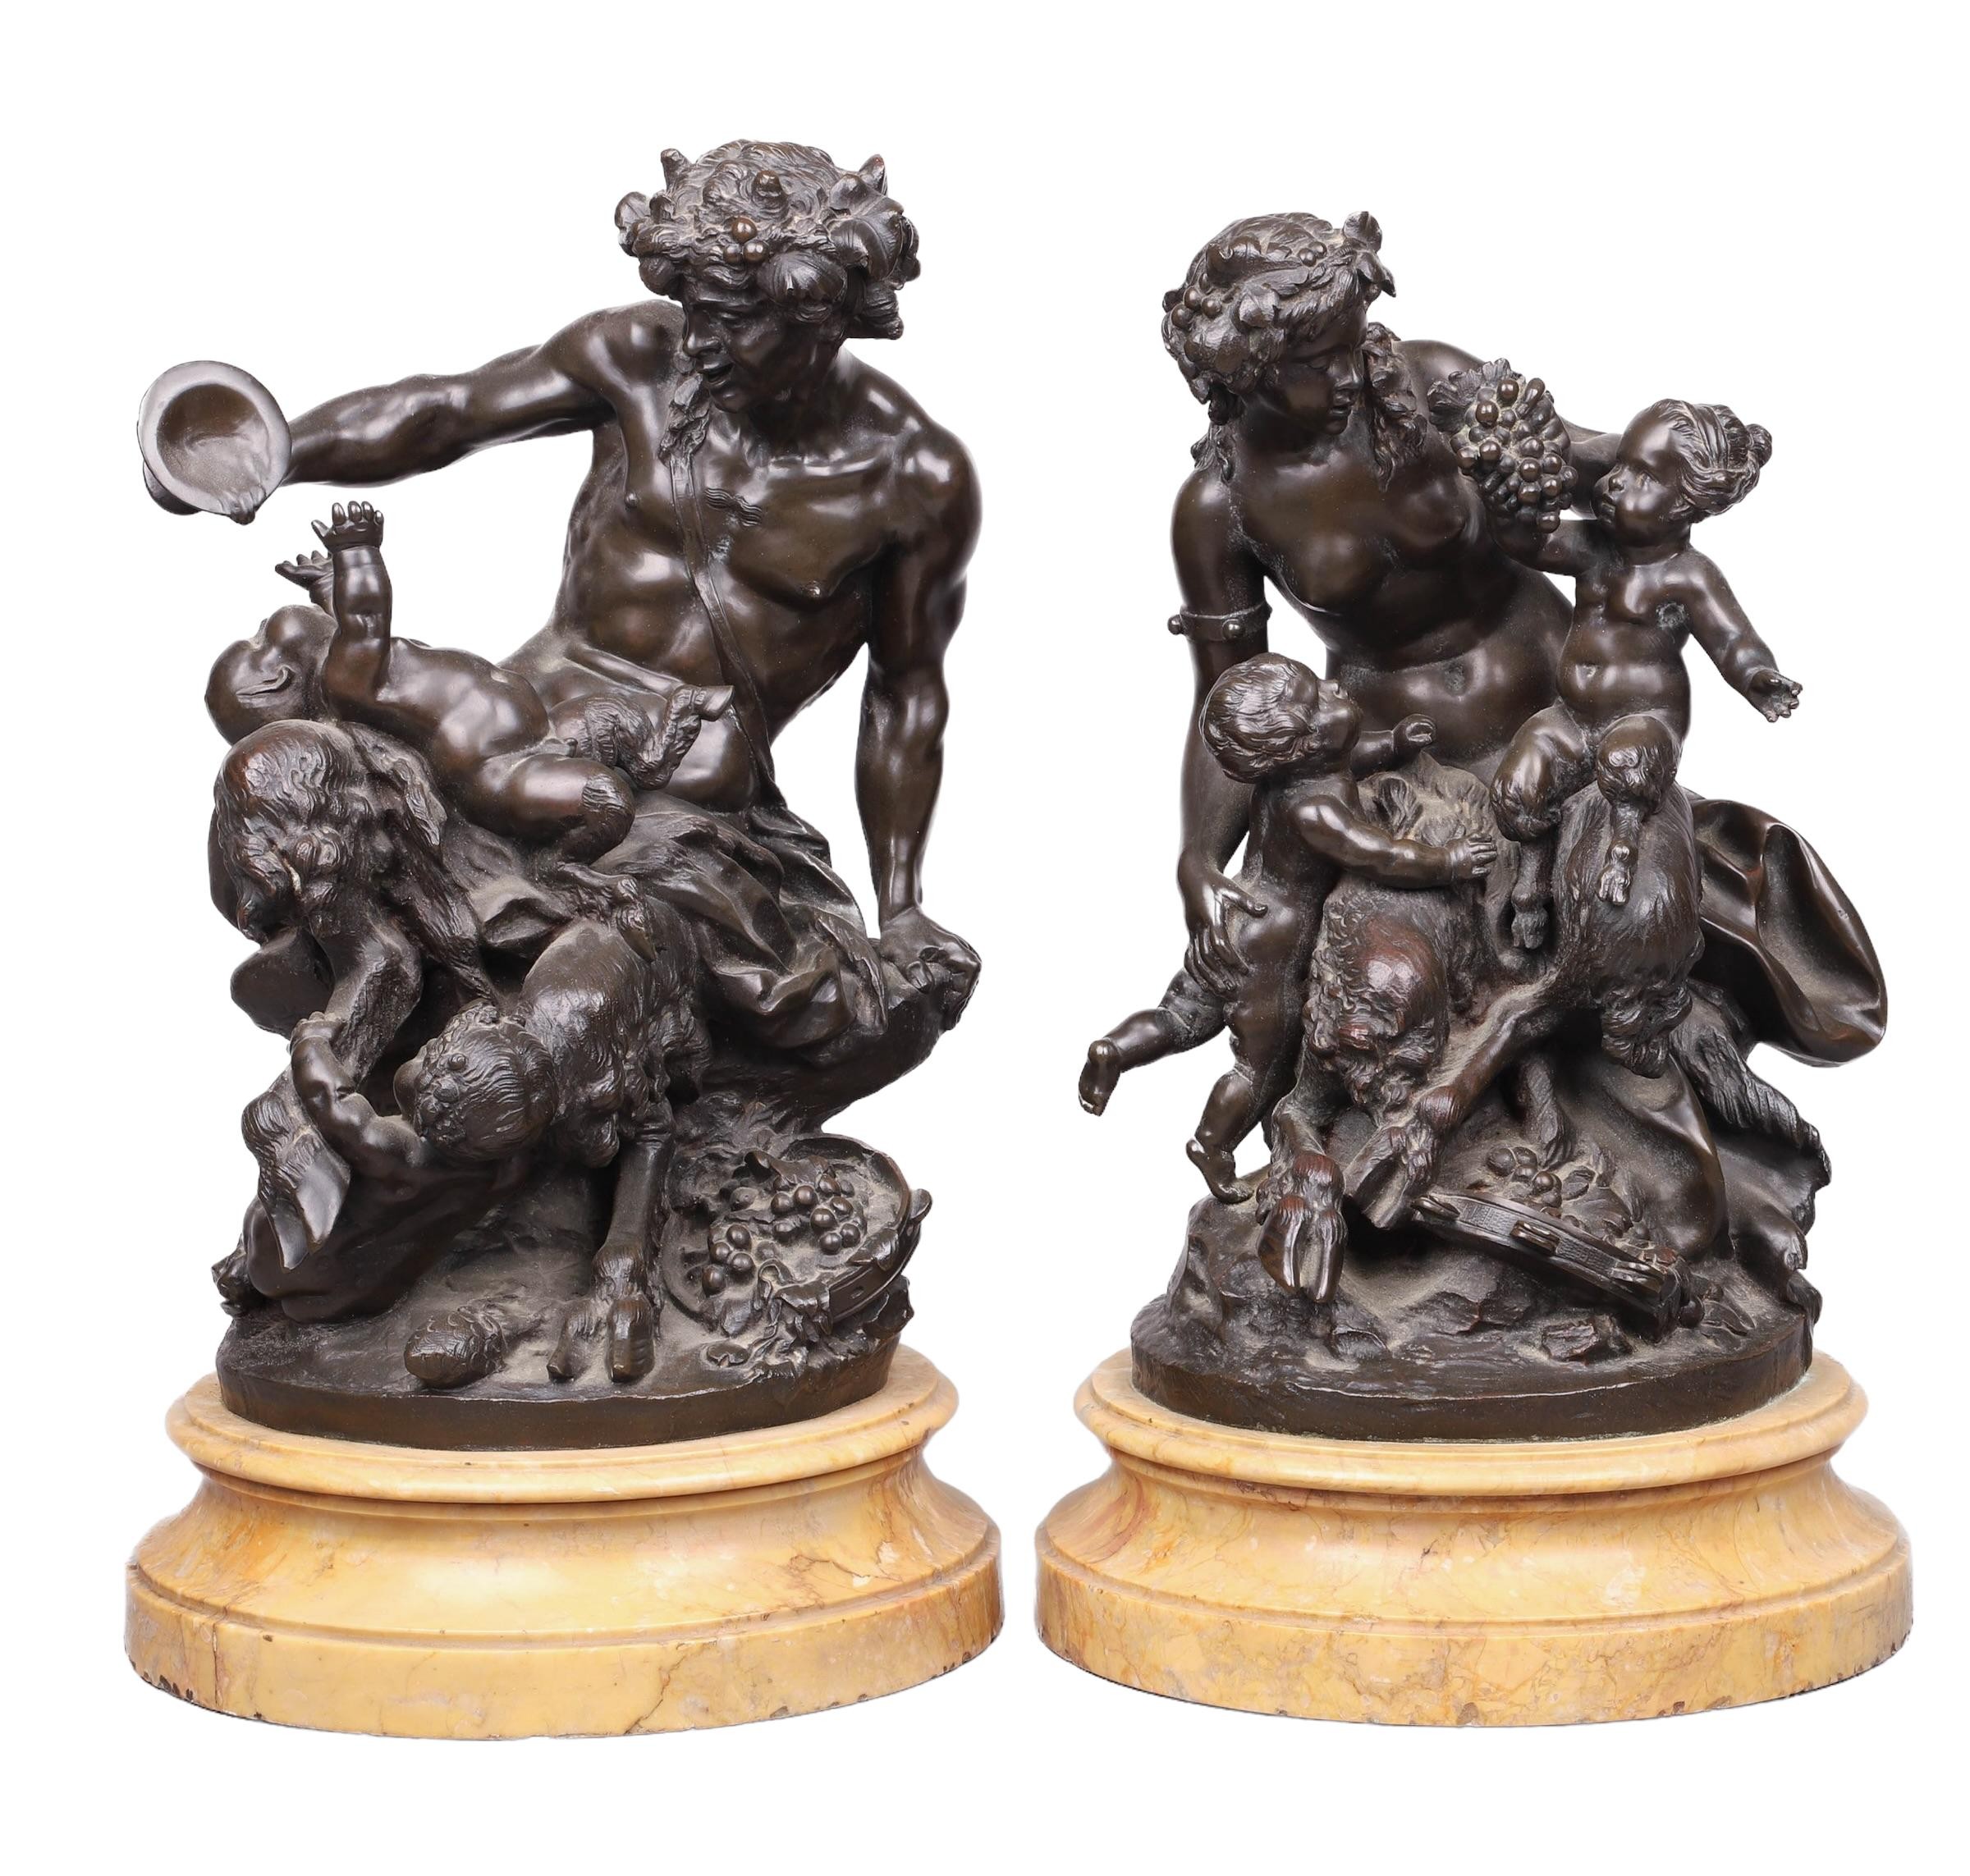  2 Bronze sculptures after Michel 27a441